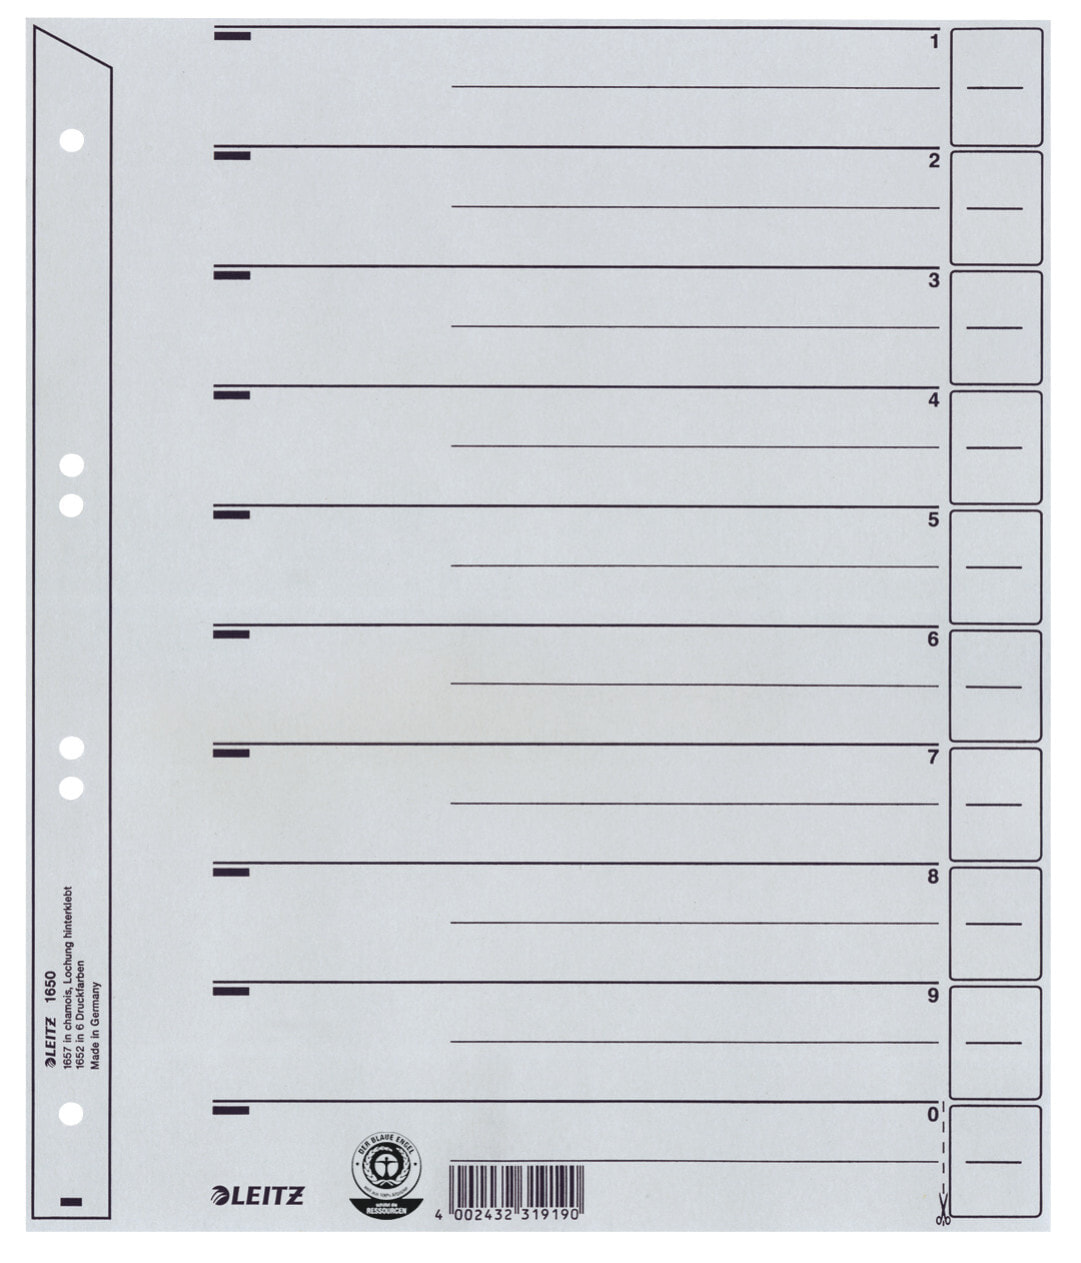 Leitz 16500085 закладка-разделитель Числовая закладка-разделитель Картон Серый